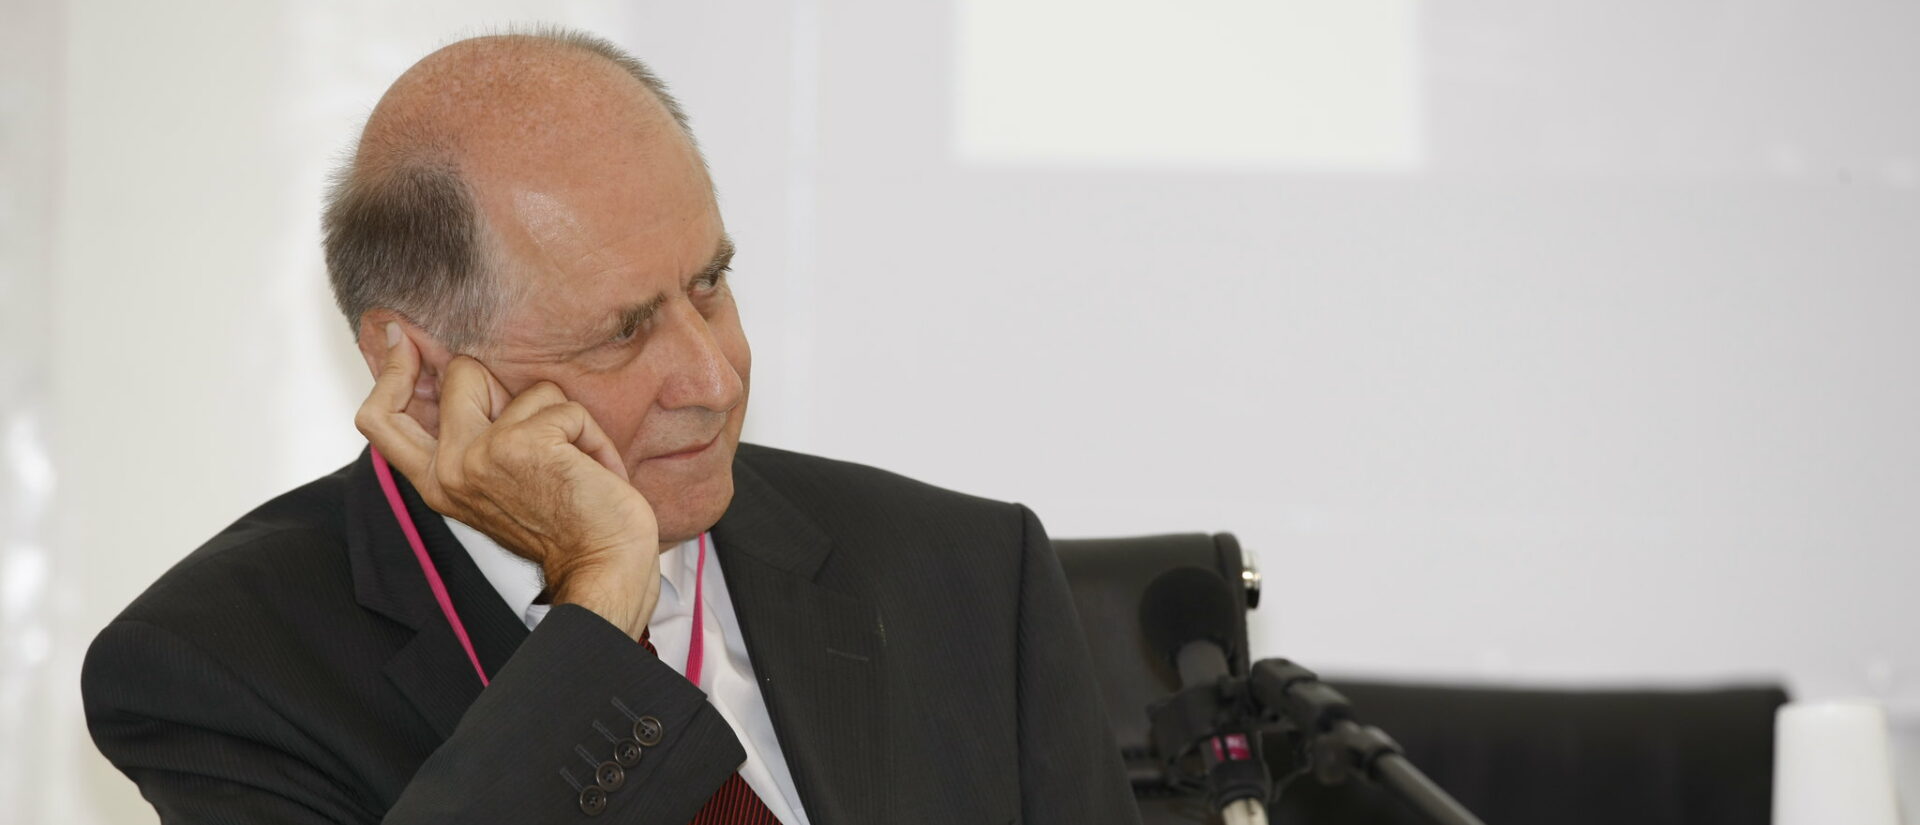 L'ancien vice-président du Conseil d'Etat français Jean-Marc Sauvé dirige la commission d'enquête sur les abus sexuels | © MEDEF/Flickr/CC BY 2.0